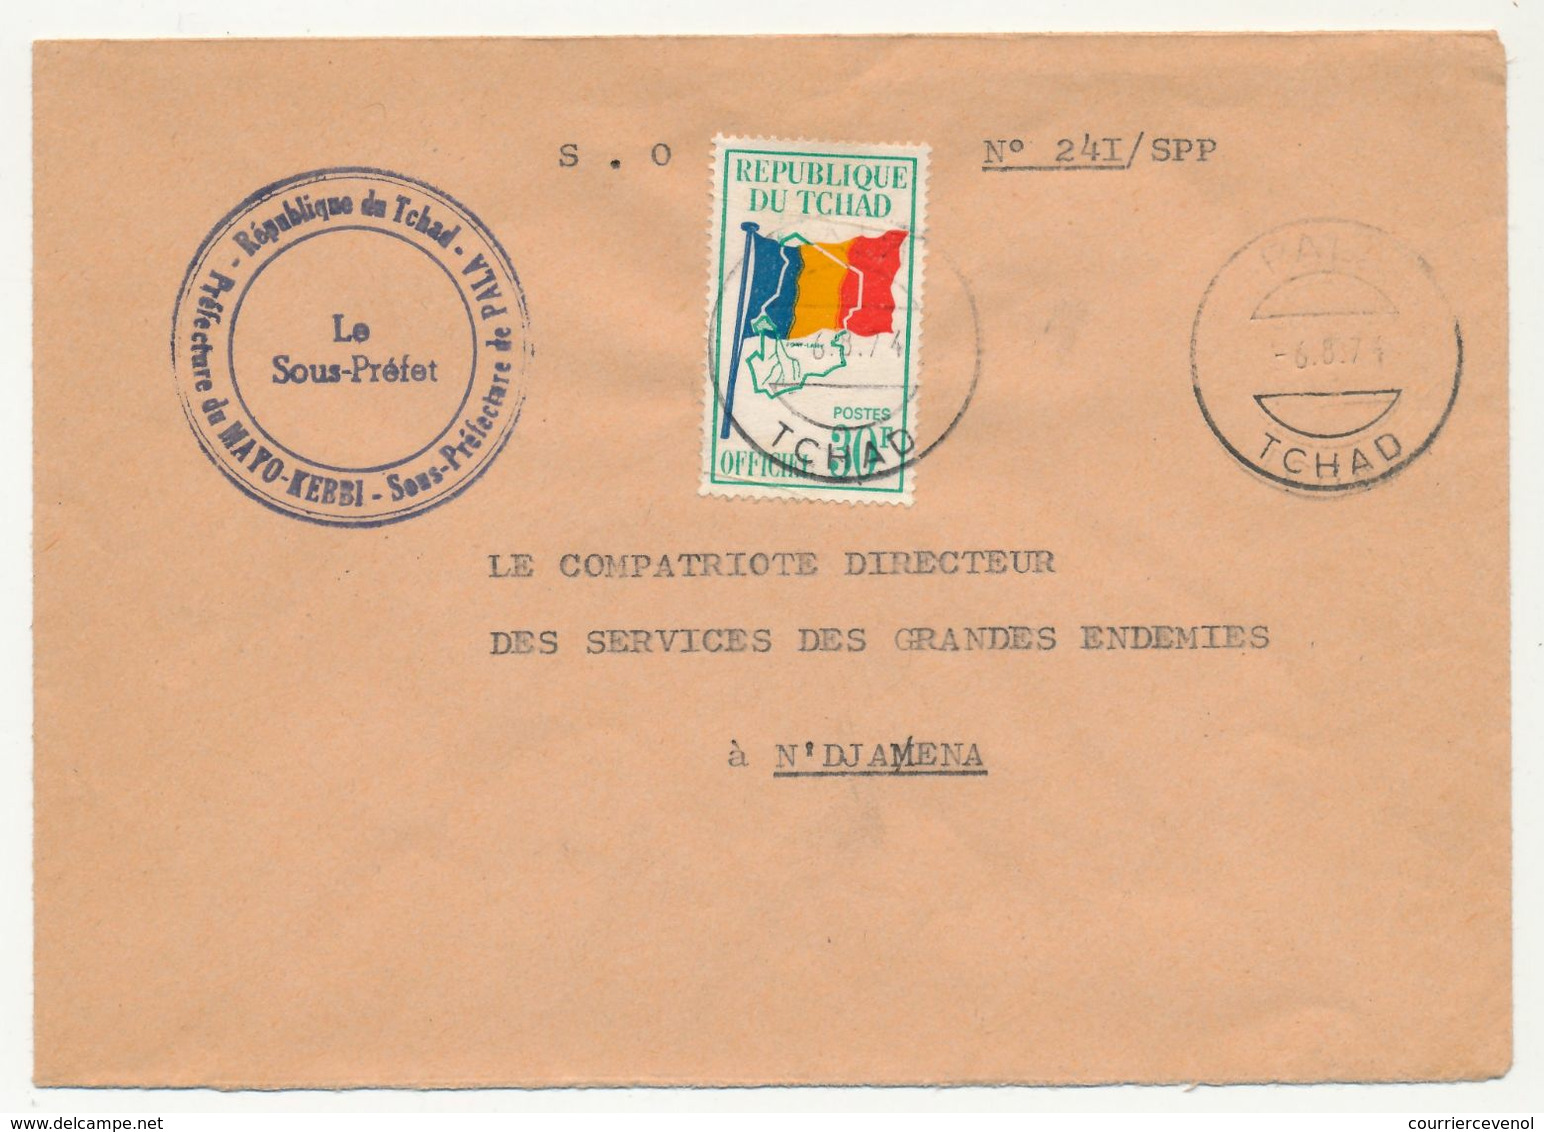 TCHAD - Env. Affr Timbre Officiel 30F - République Du Tchad - Préfecture Du Mayo-Kerbi Sous Préfecture De Pala 1974 - Tchad (1960-...)